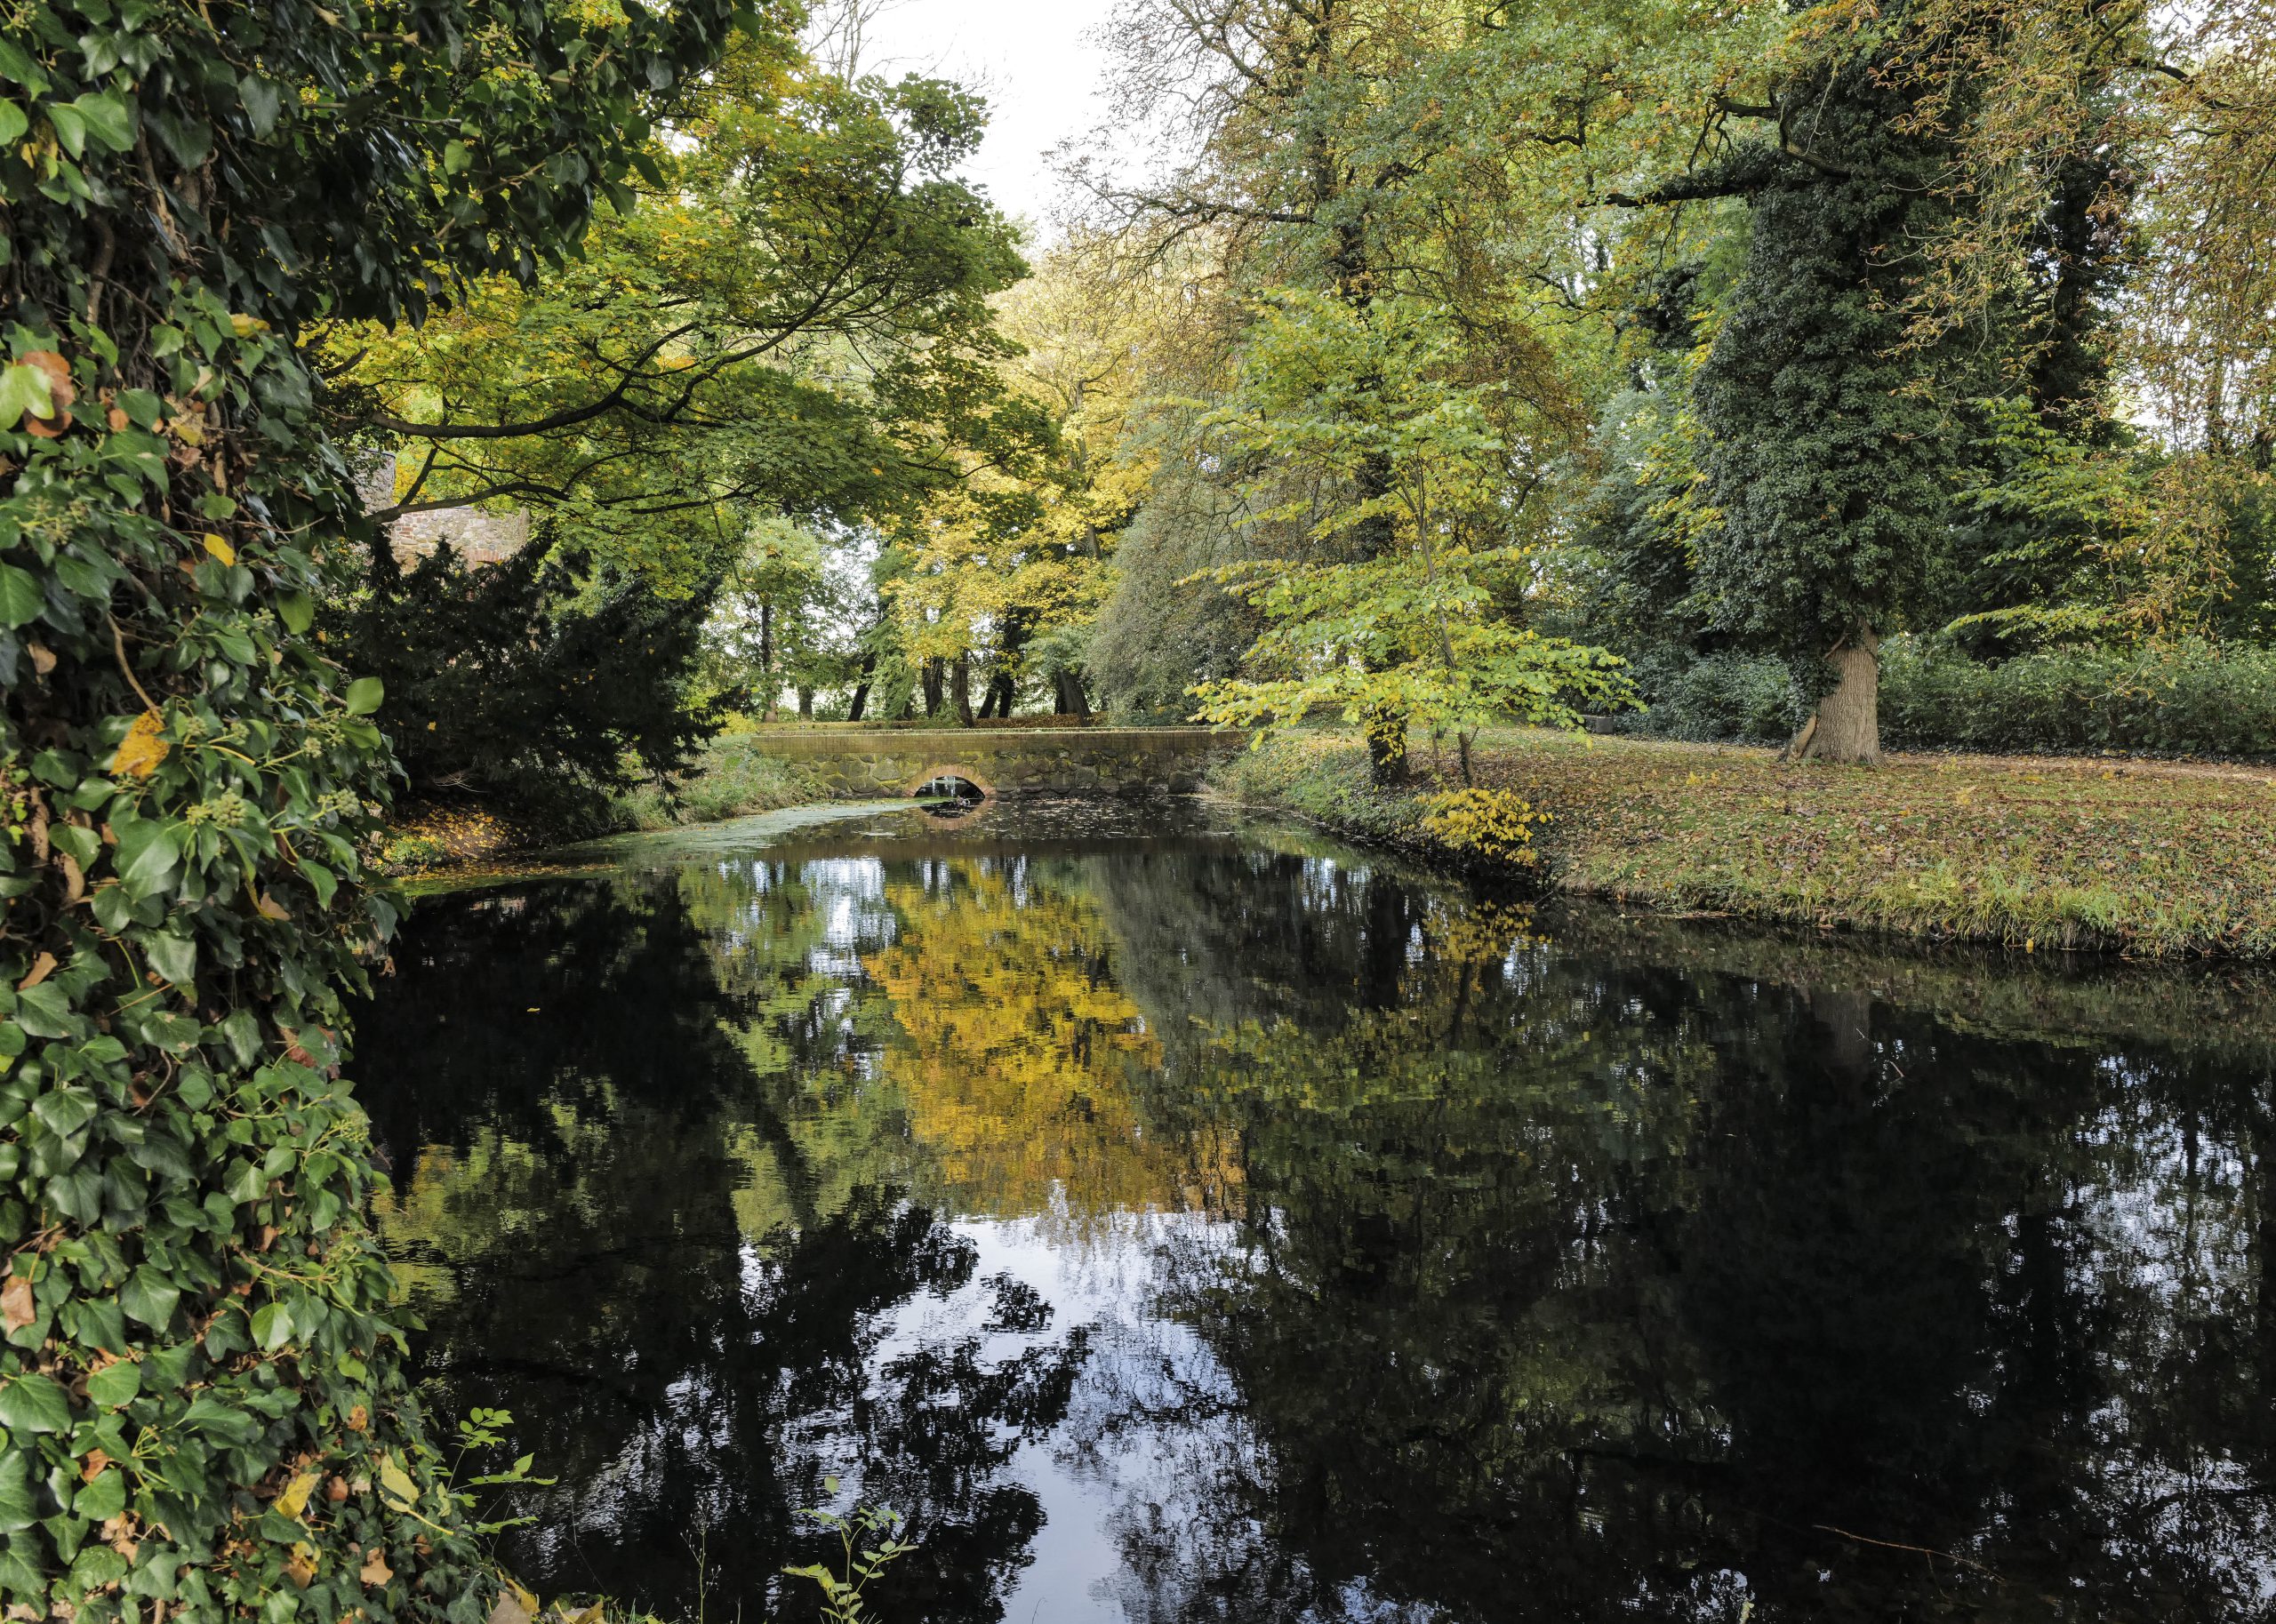 Freyenstein Pond in the palace ground II